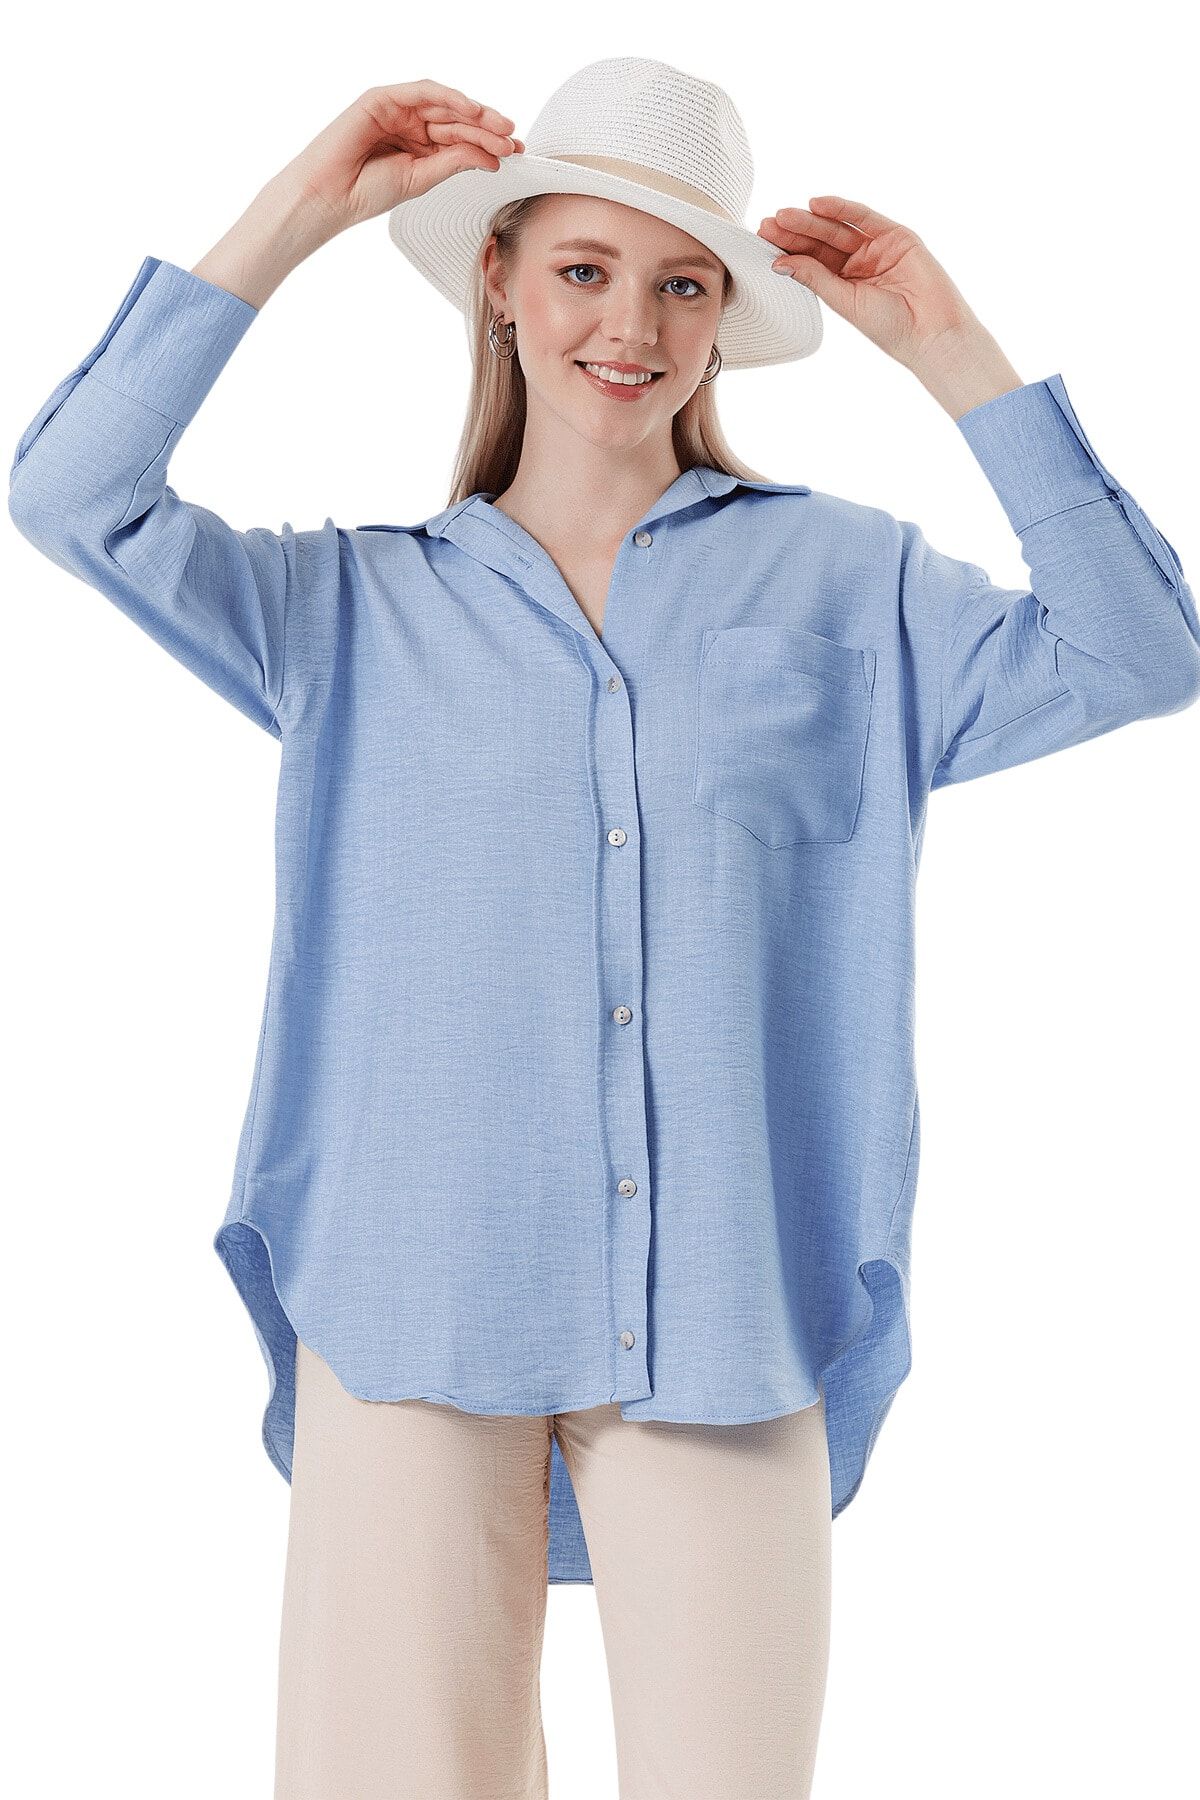 butikburuç Kadın Mavi Oval Kesim Tek Cep Gömlek